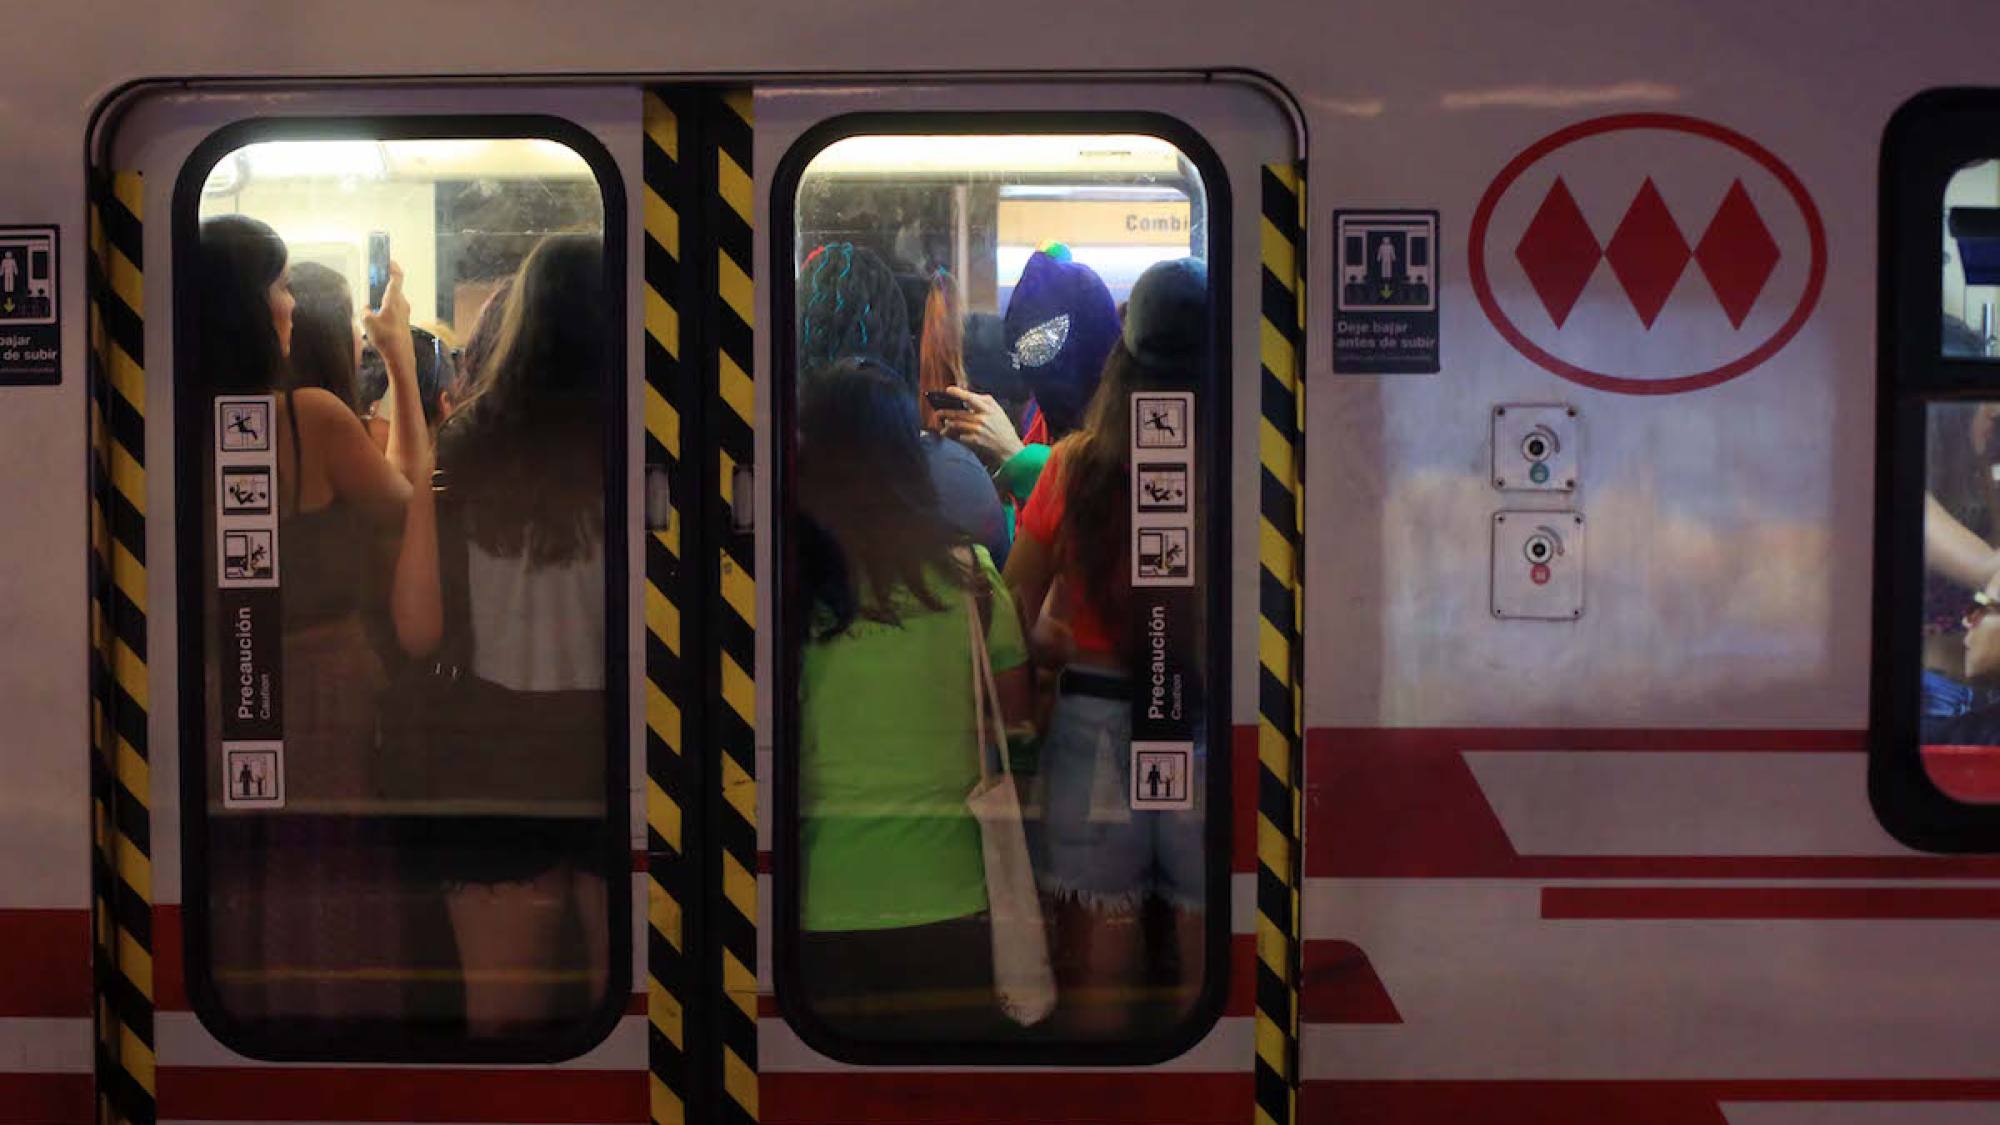 Metro de Santiago: Hasta qué hora funciona en el Día de la Mujer